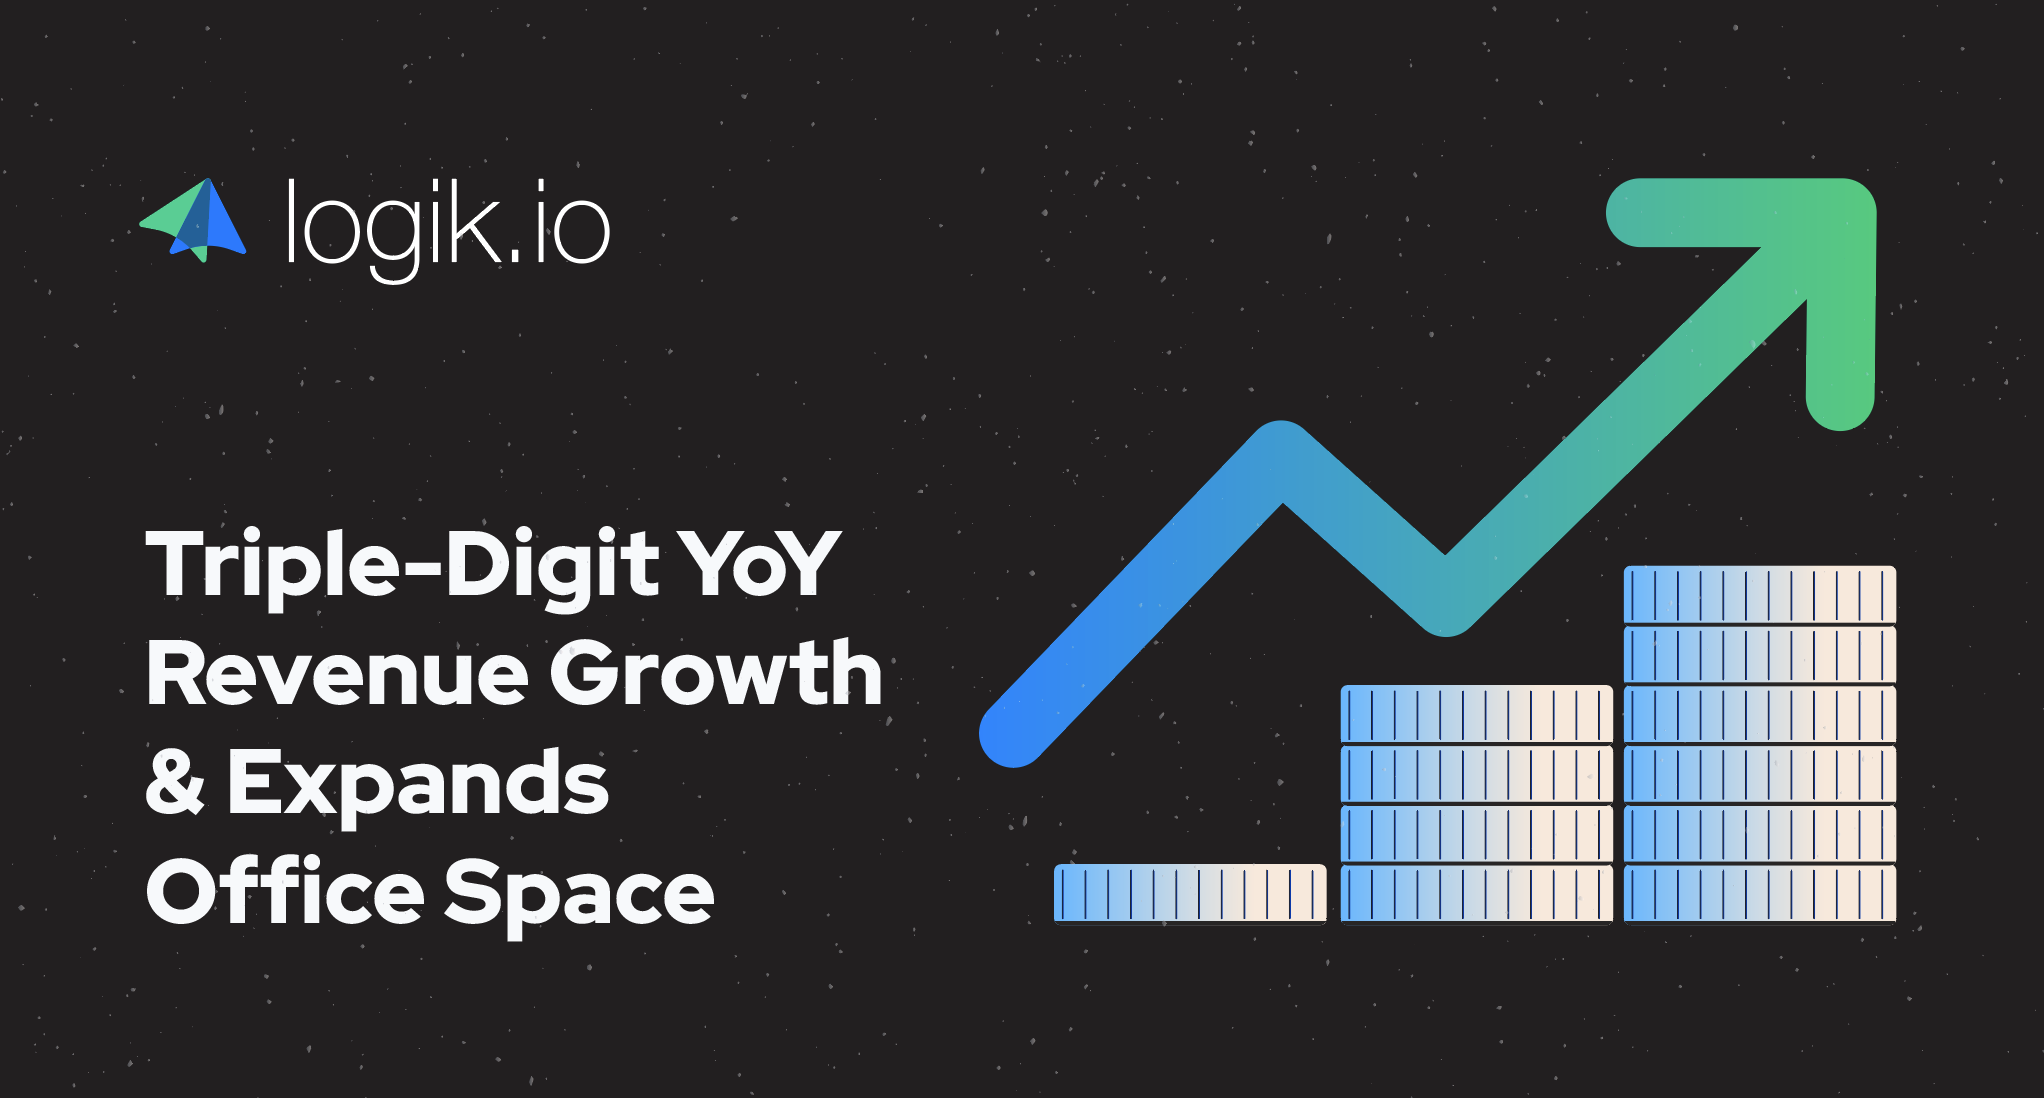 Logik.io Announces Triple-Digit YoY Revenue Growth & Expands Office Space